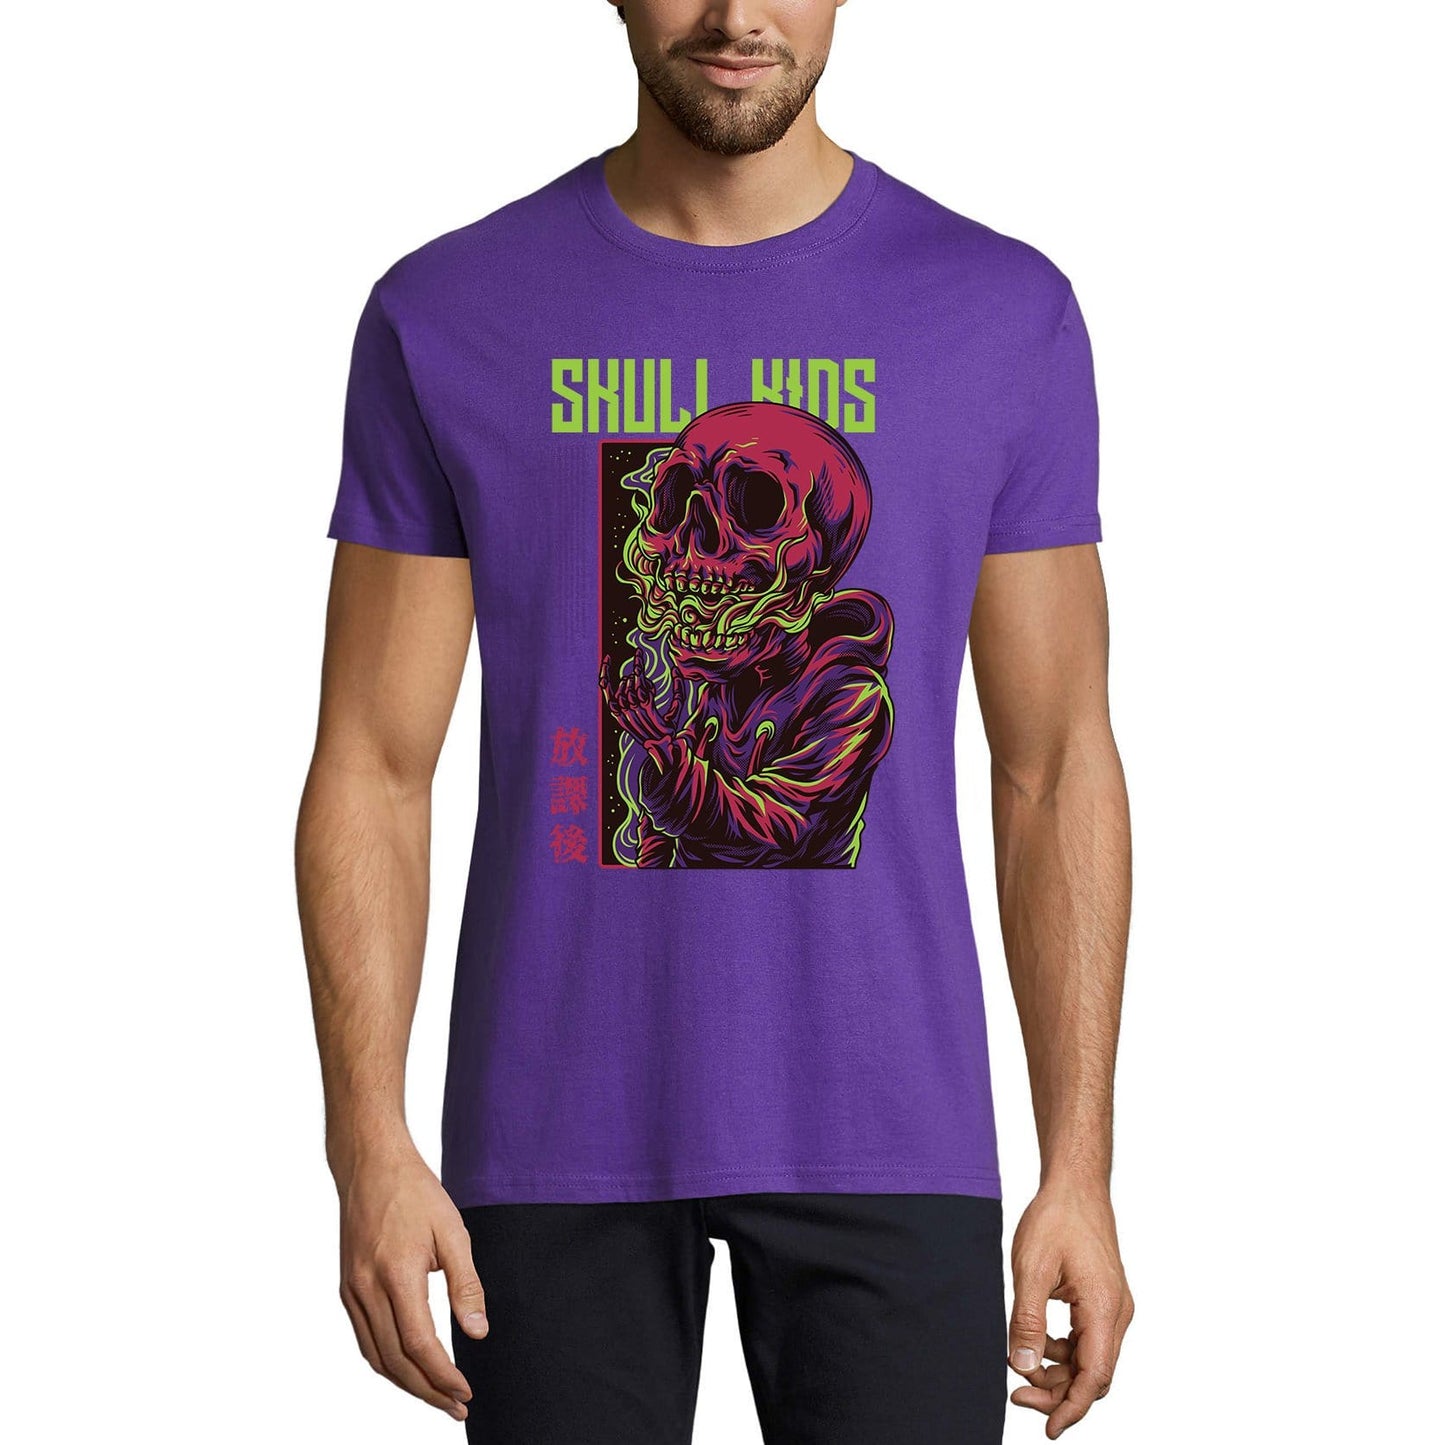 ULTRABASIC Men's Novelty T-Shirt Skull Kids - Scary Short Sleeve Tee Shirt